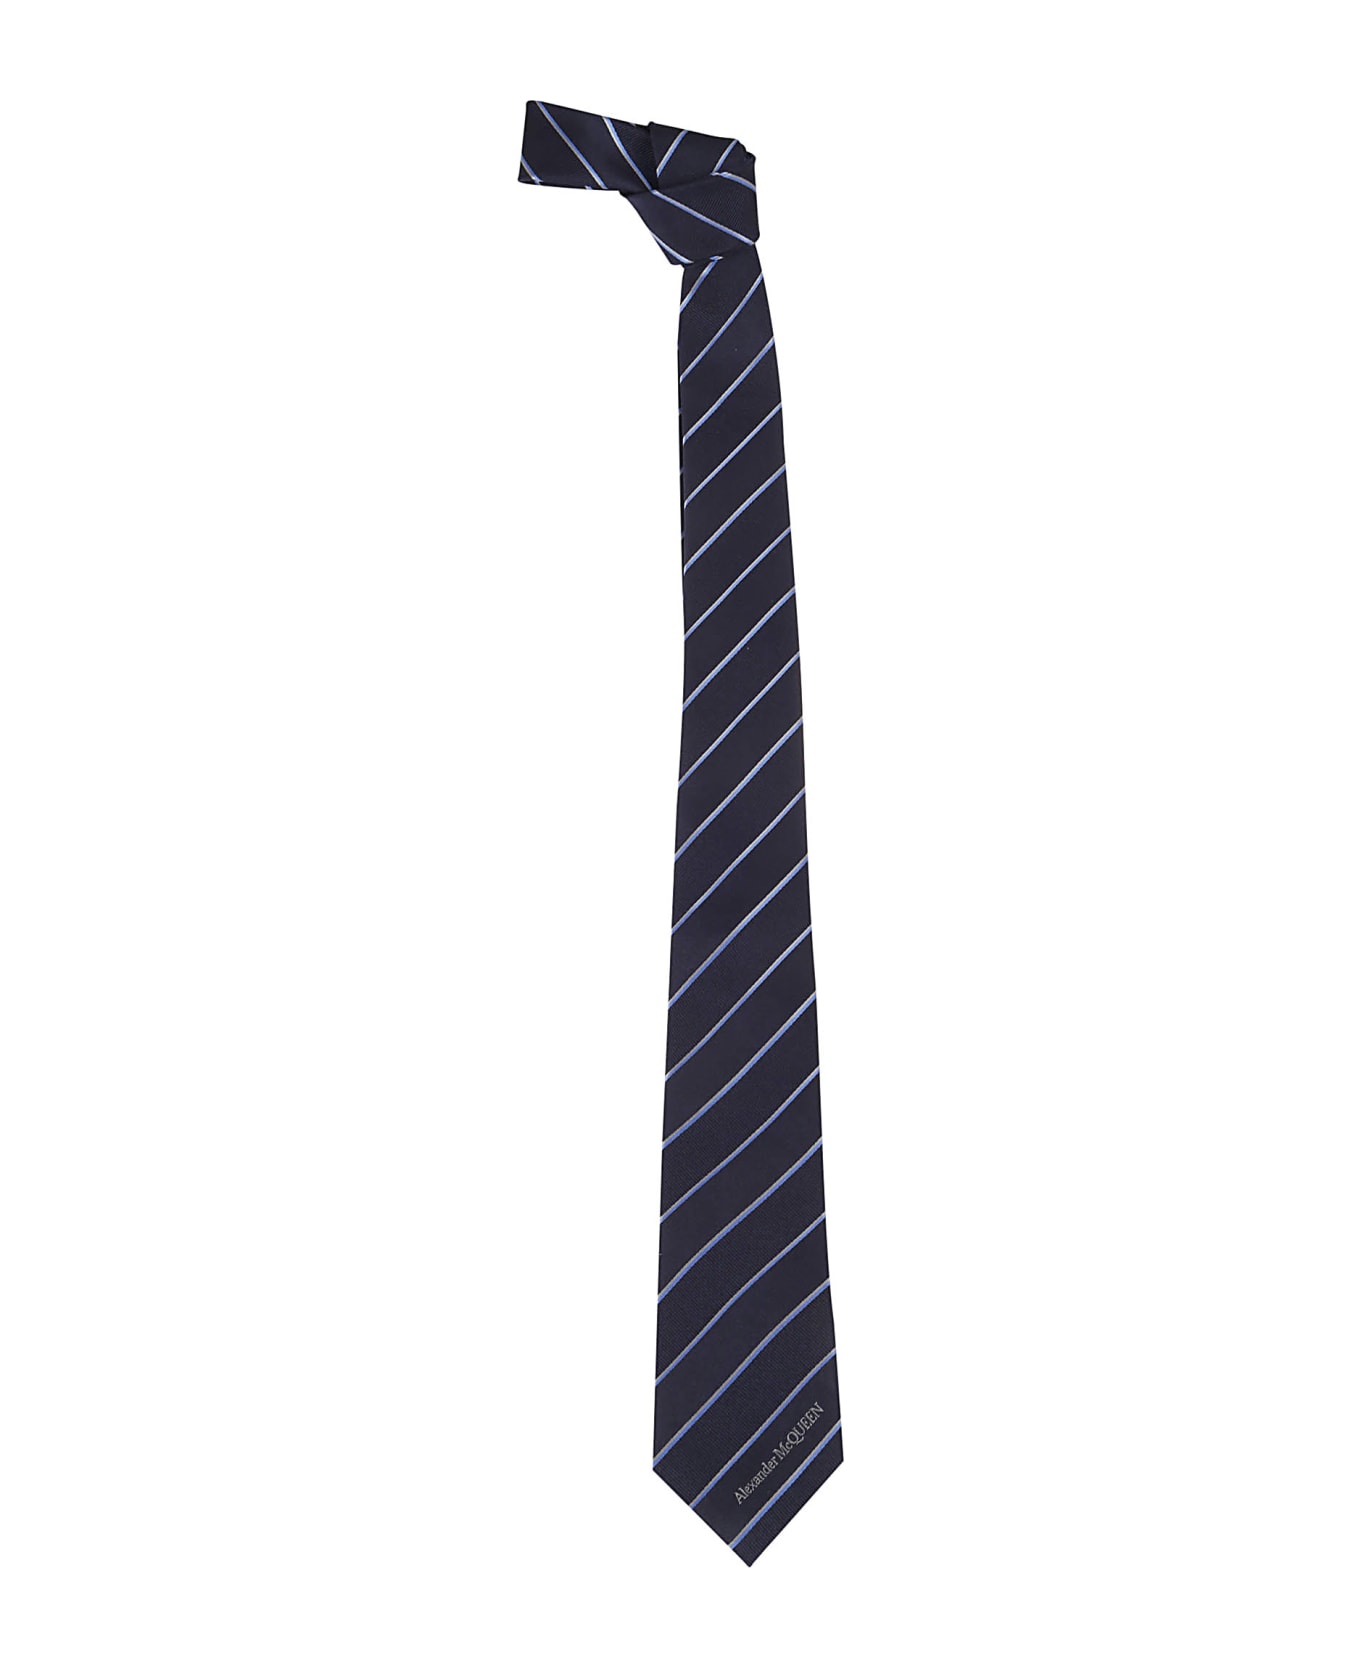 Alexander McQueen Tie Ruled Mcqueen - Navy Blue